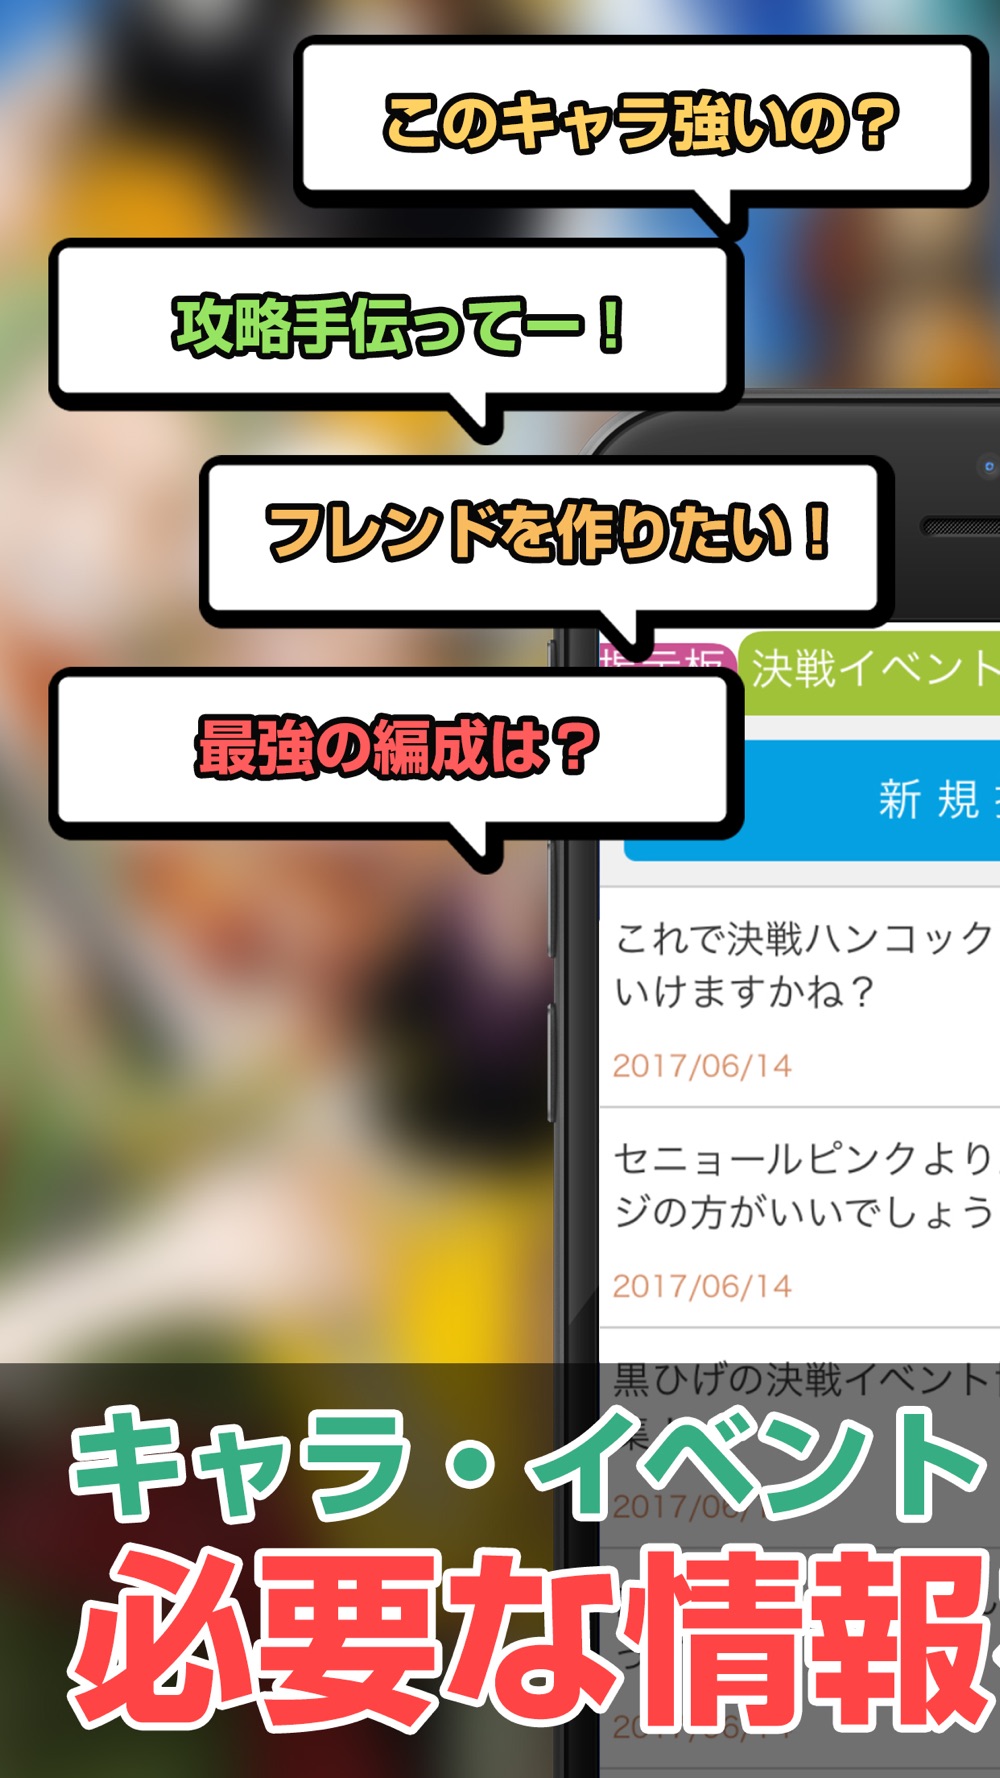 攻略情報マルチ募集 For トレクル One Piece トレジャークルーズ Free Download App For Iphone Steprimo Com